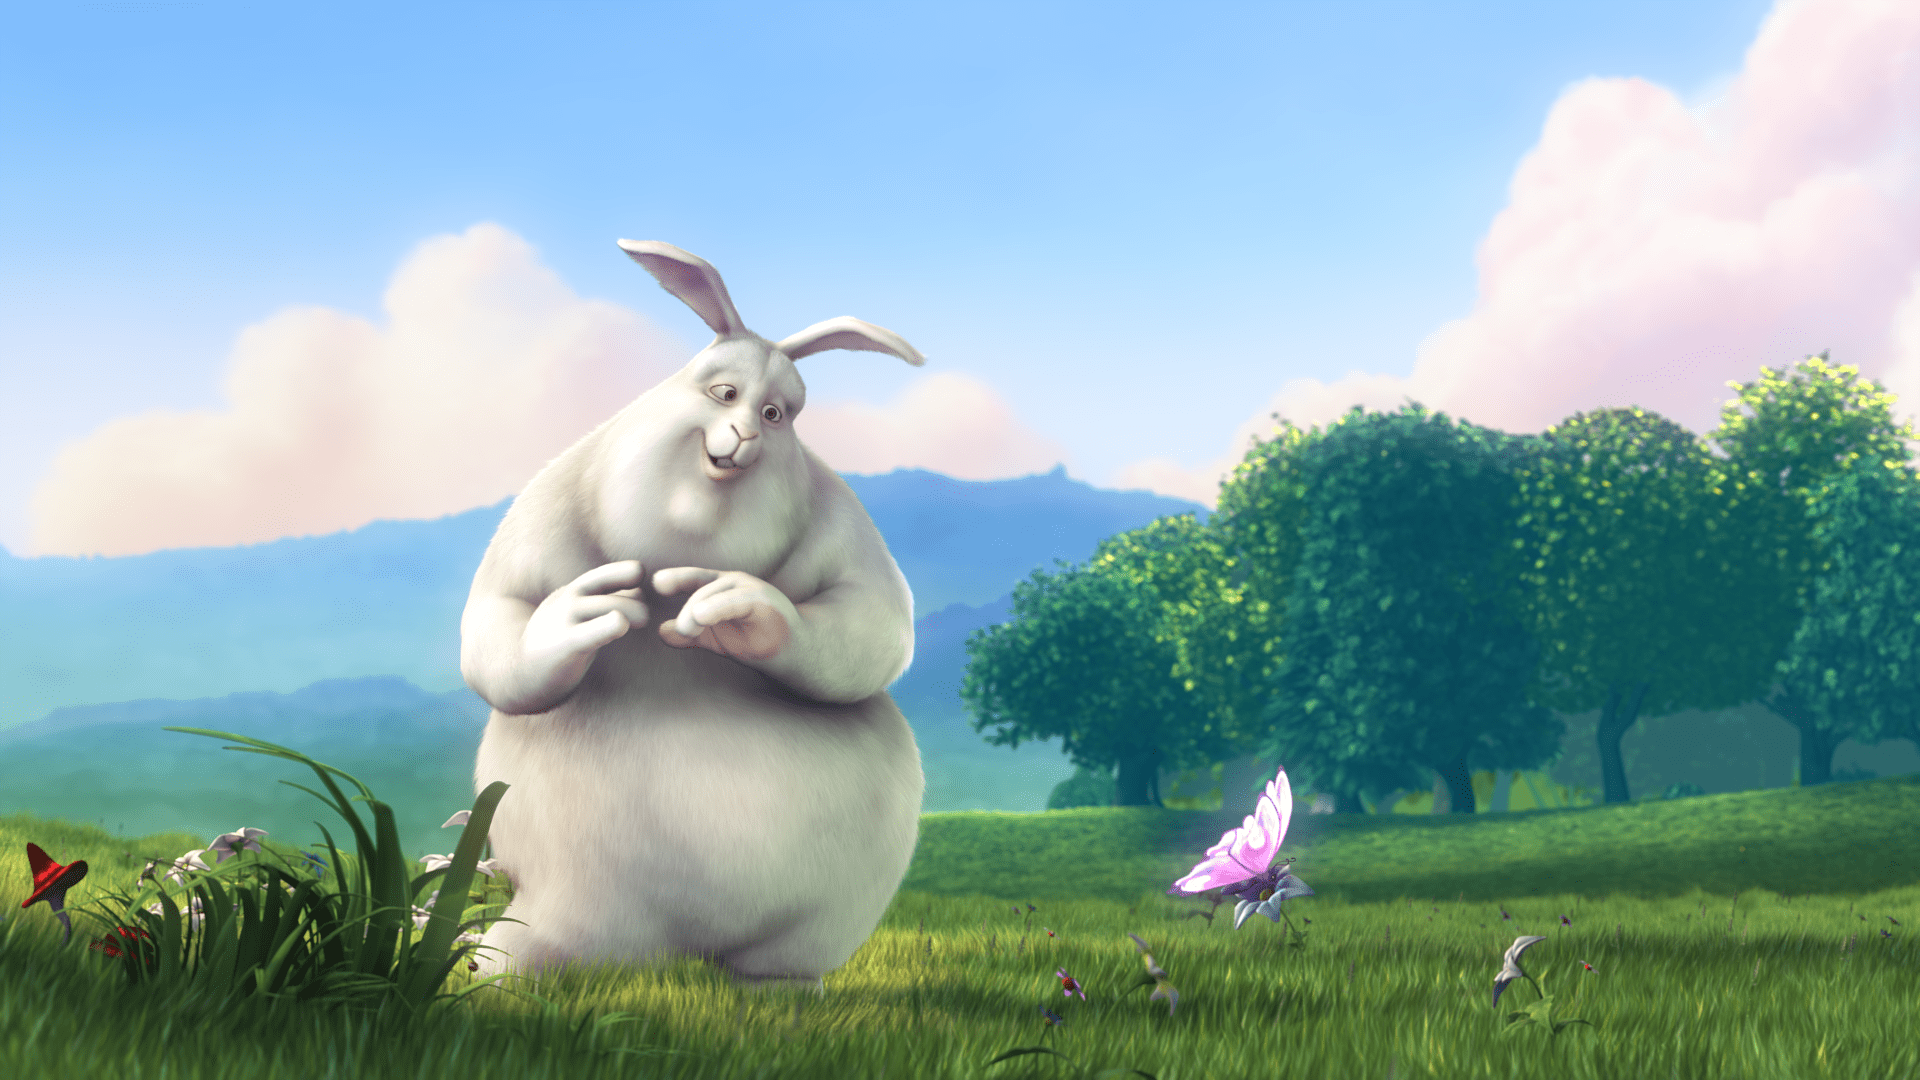 Bunny movie image.